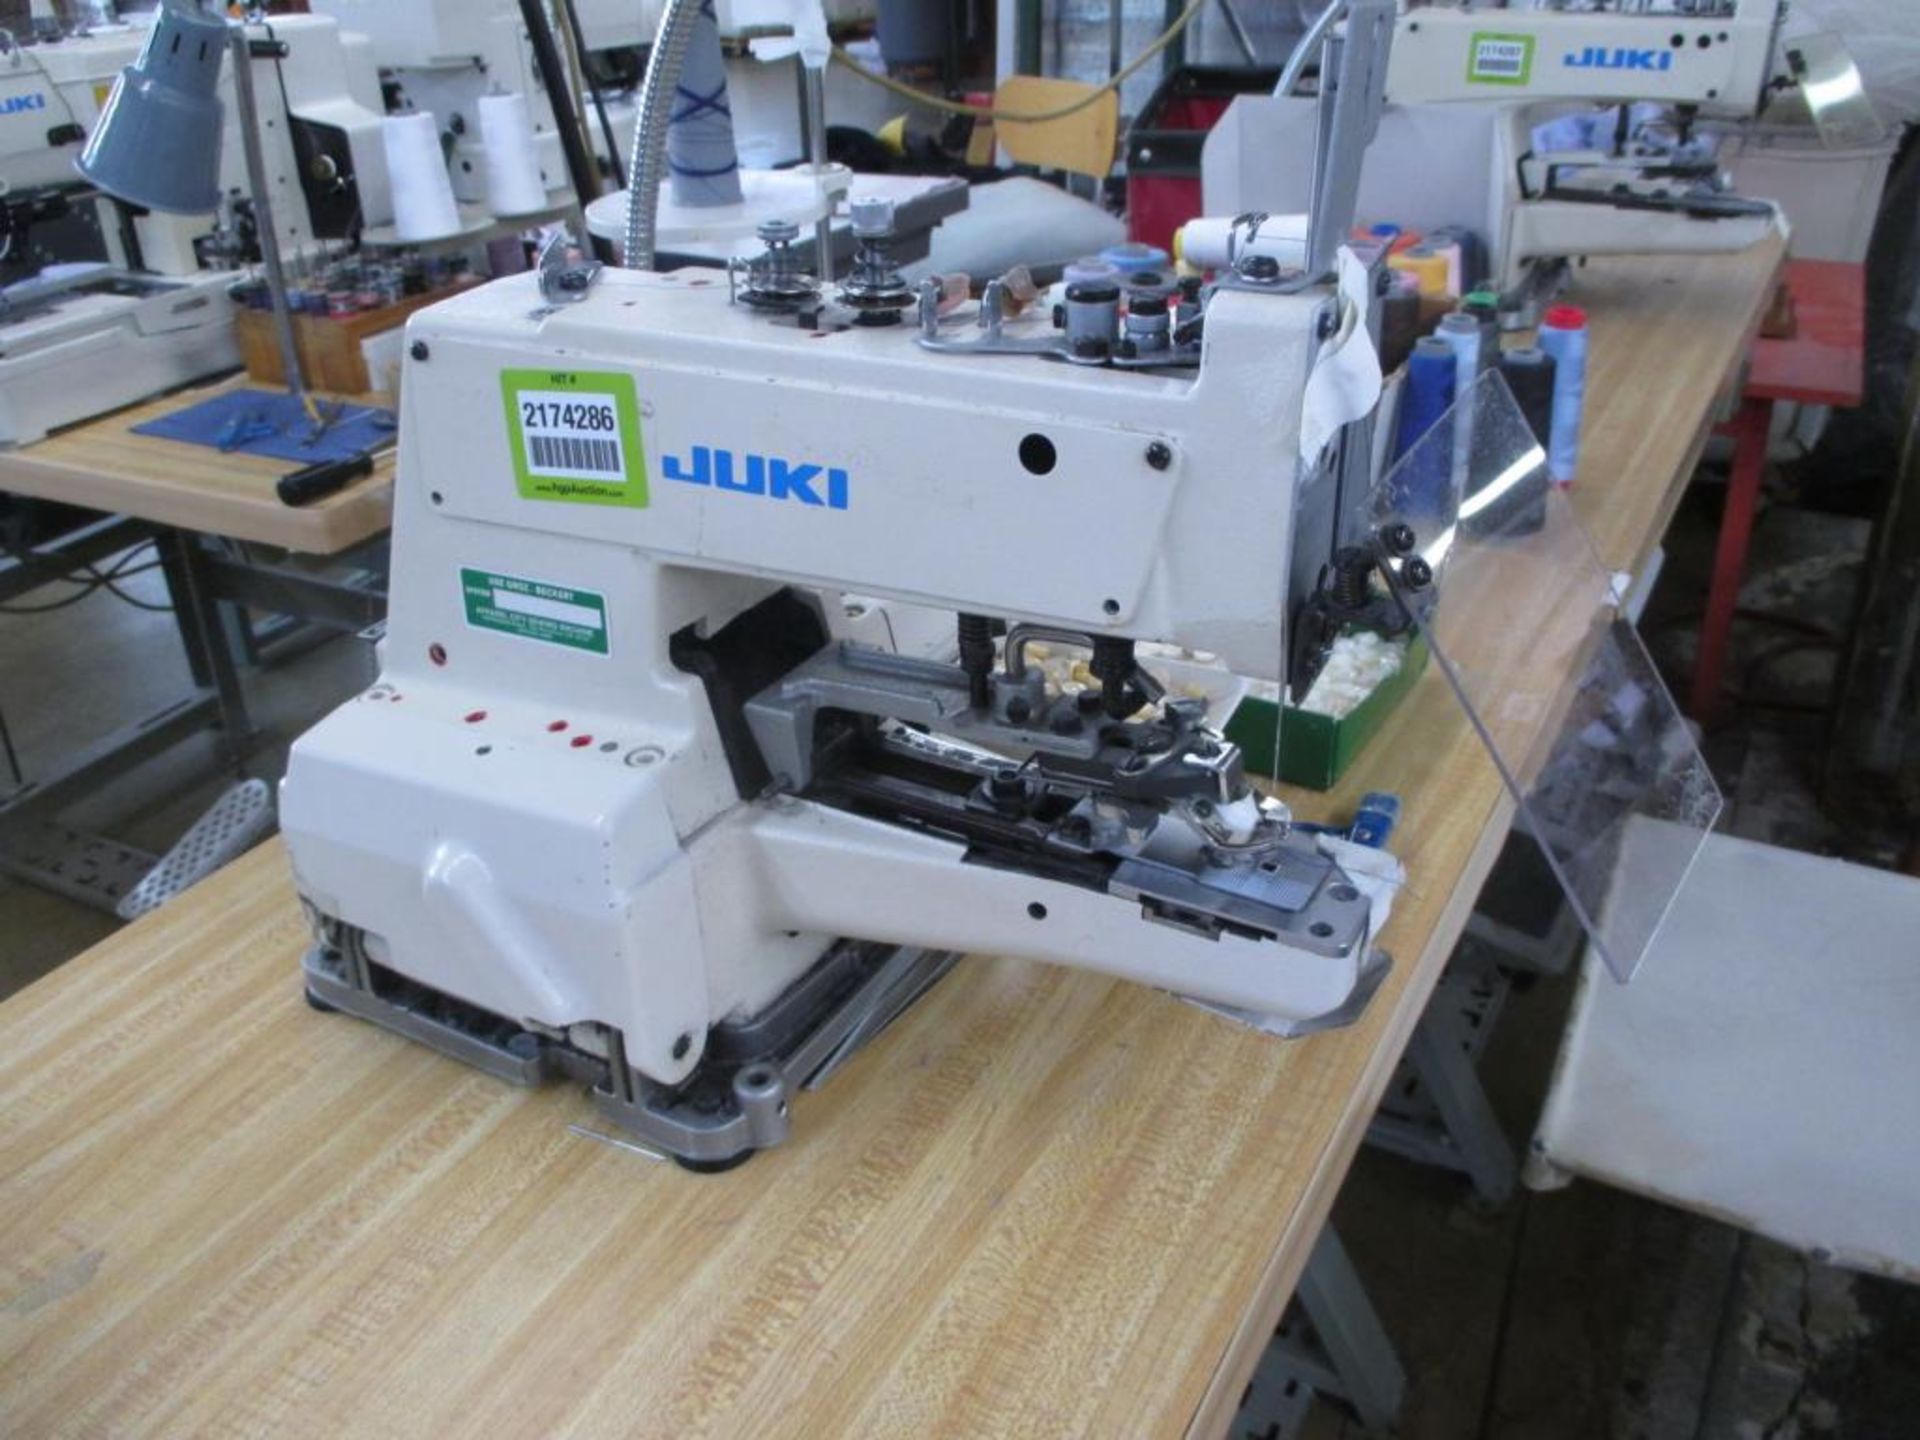 Automatic Button Sewing Machine. Juki MB-373 Z032 Automatic Button Sewing Machine, Chainstitch - Image 3 of 5